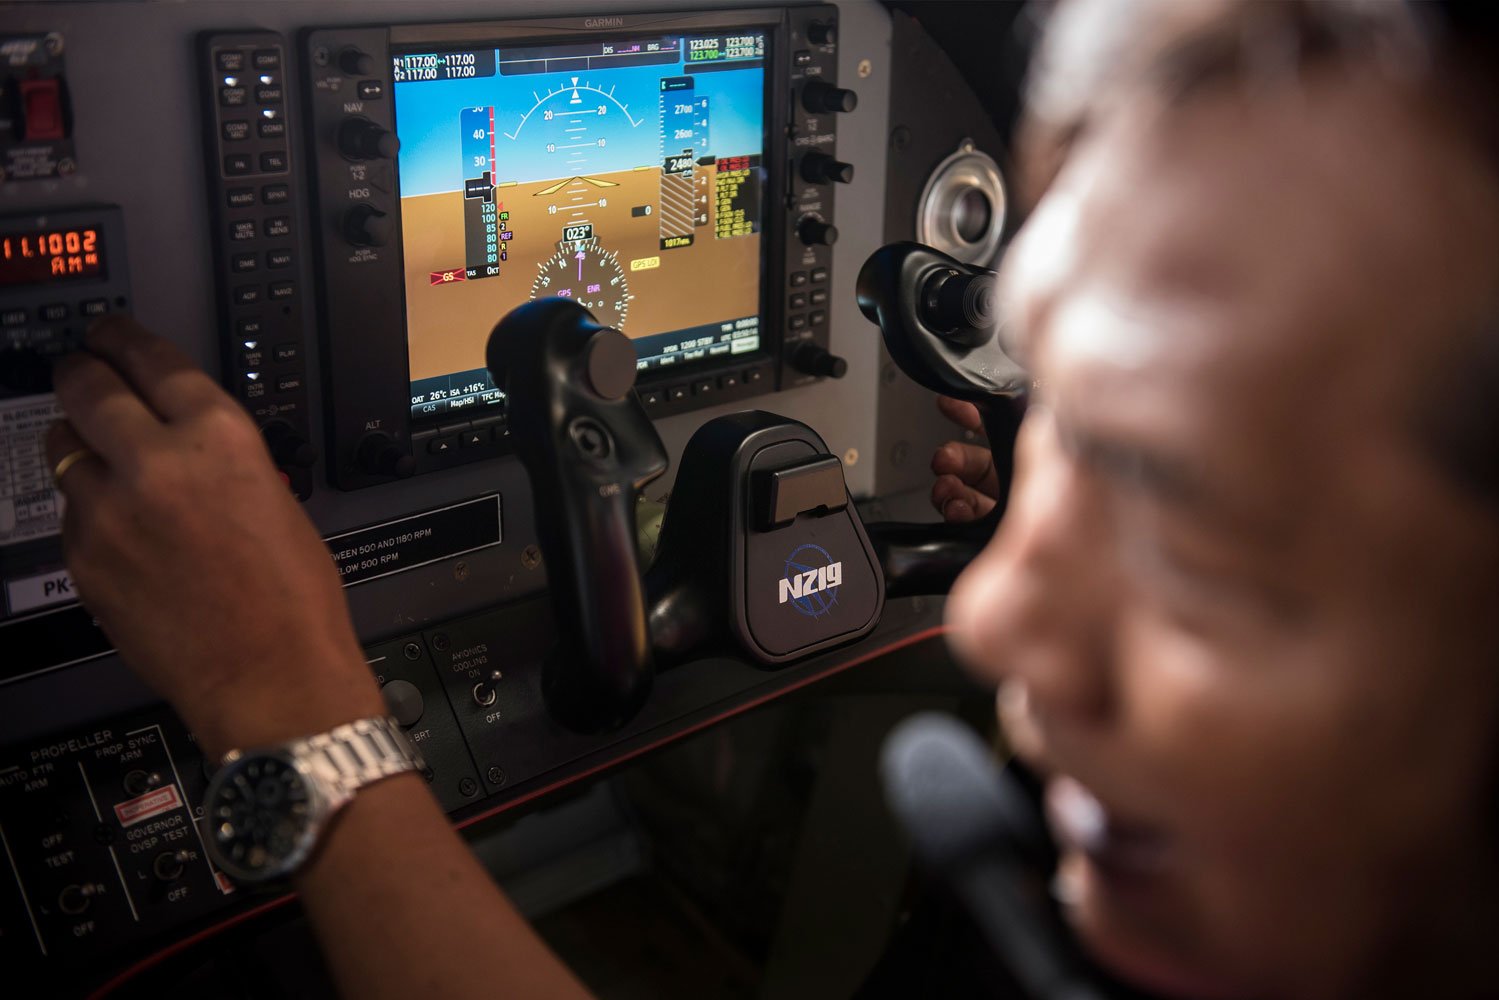 Insinyur PTDI sedang memeriksa tampilan avionic Garmin G-1000 di dalam kokpit pesawat N219 di Hanggar Assembly Line N219, Bandung, Jawa Barat, Kamis (28/9). Proses pembuatan N219 melibatkan insinyur dan teknisi yang merupakan orang Indonesia. 